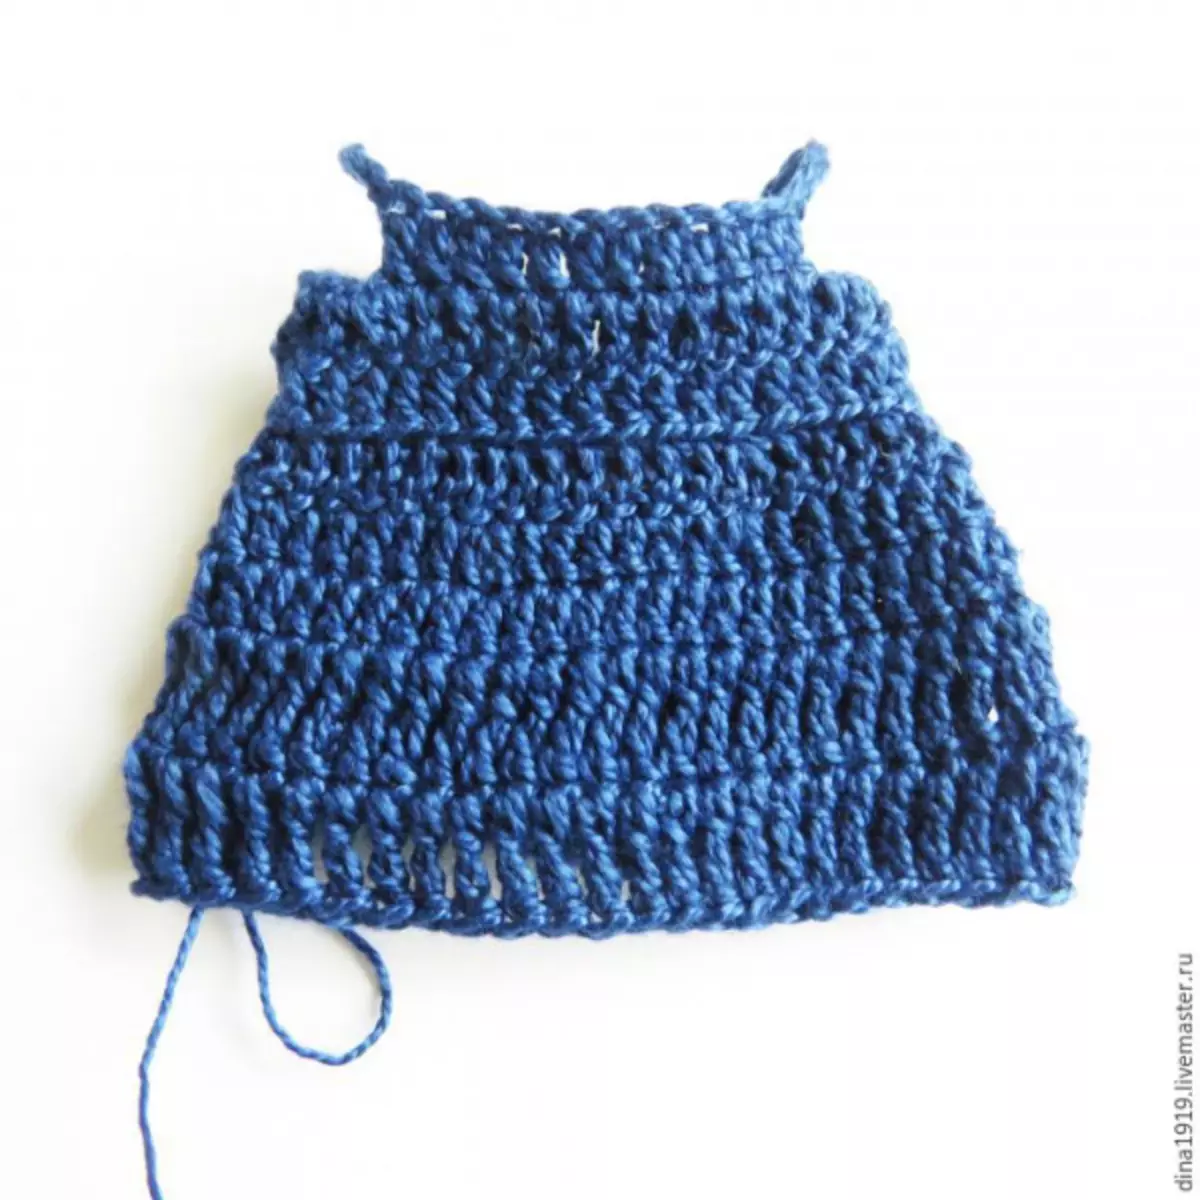 Knitred Dollkleedung: Knit fir Toy Hook